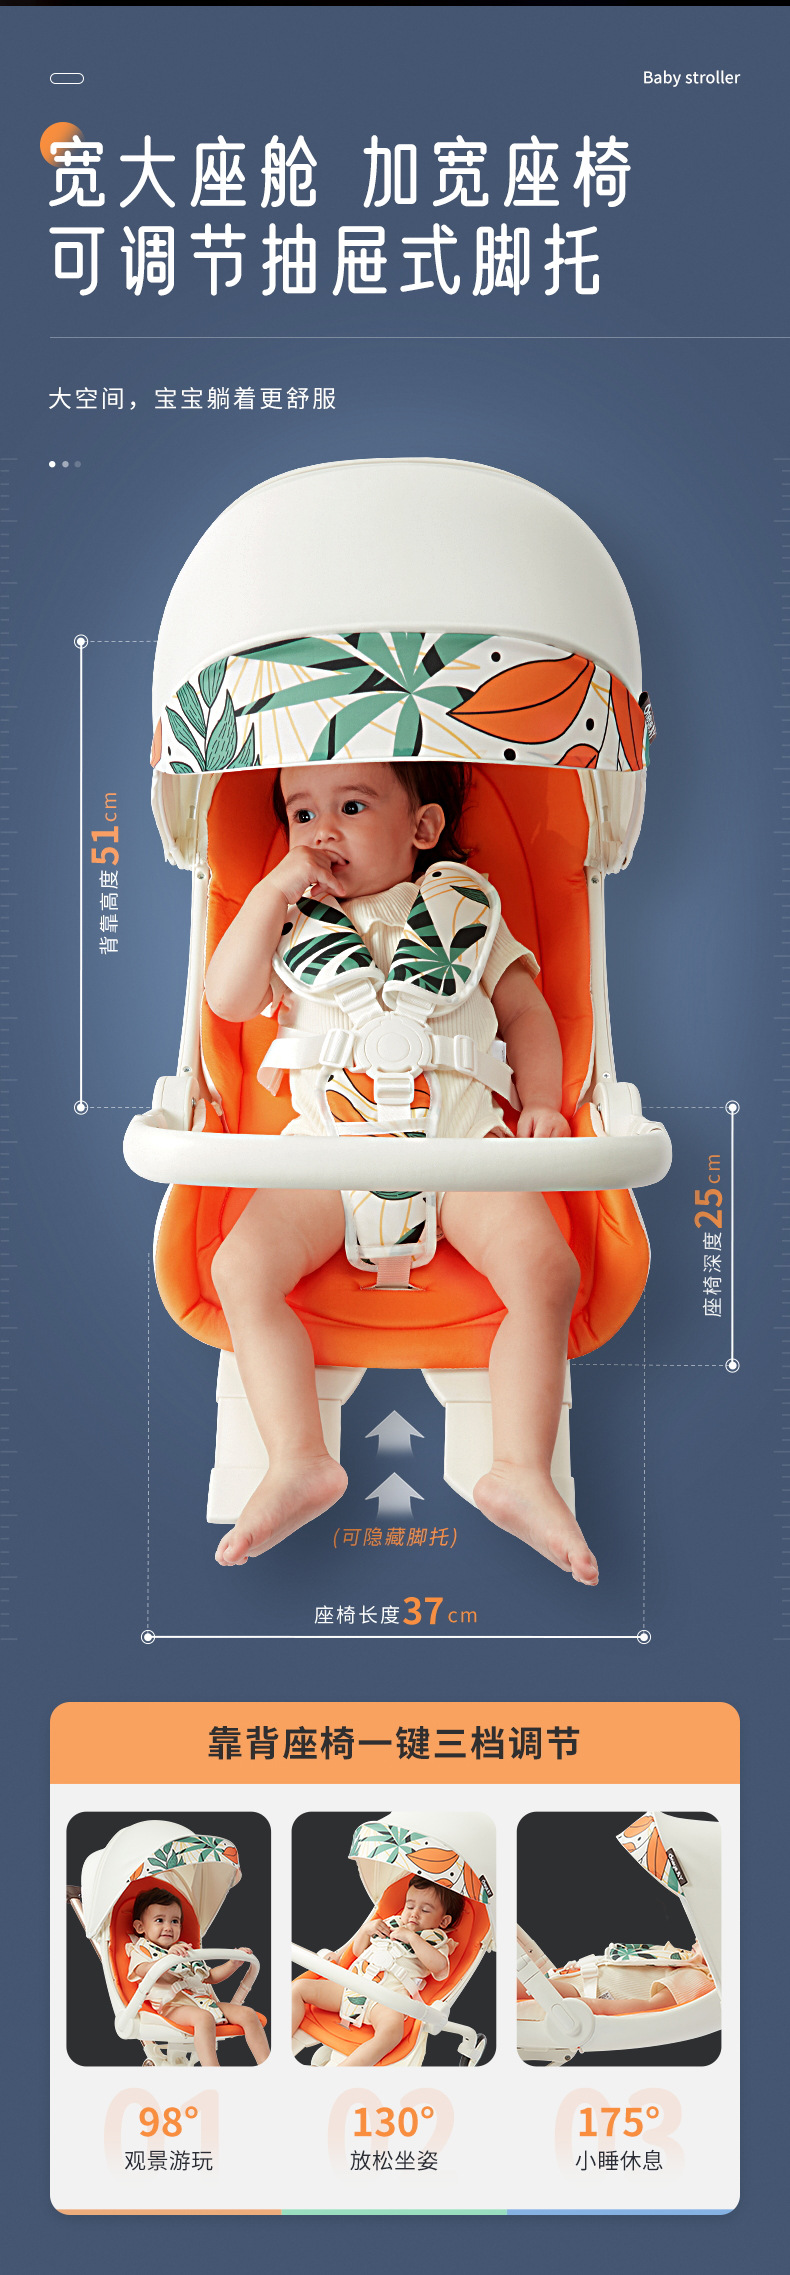 丸丫遛娃神器T6可坐可躺婴儿推车轻便折叠宝宝儿童高景观双向溜娃详情6